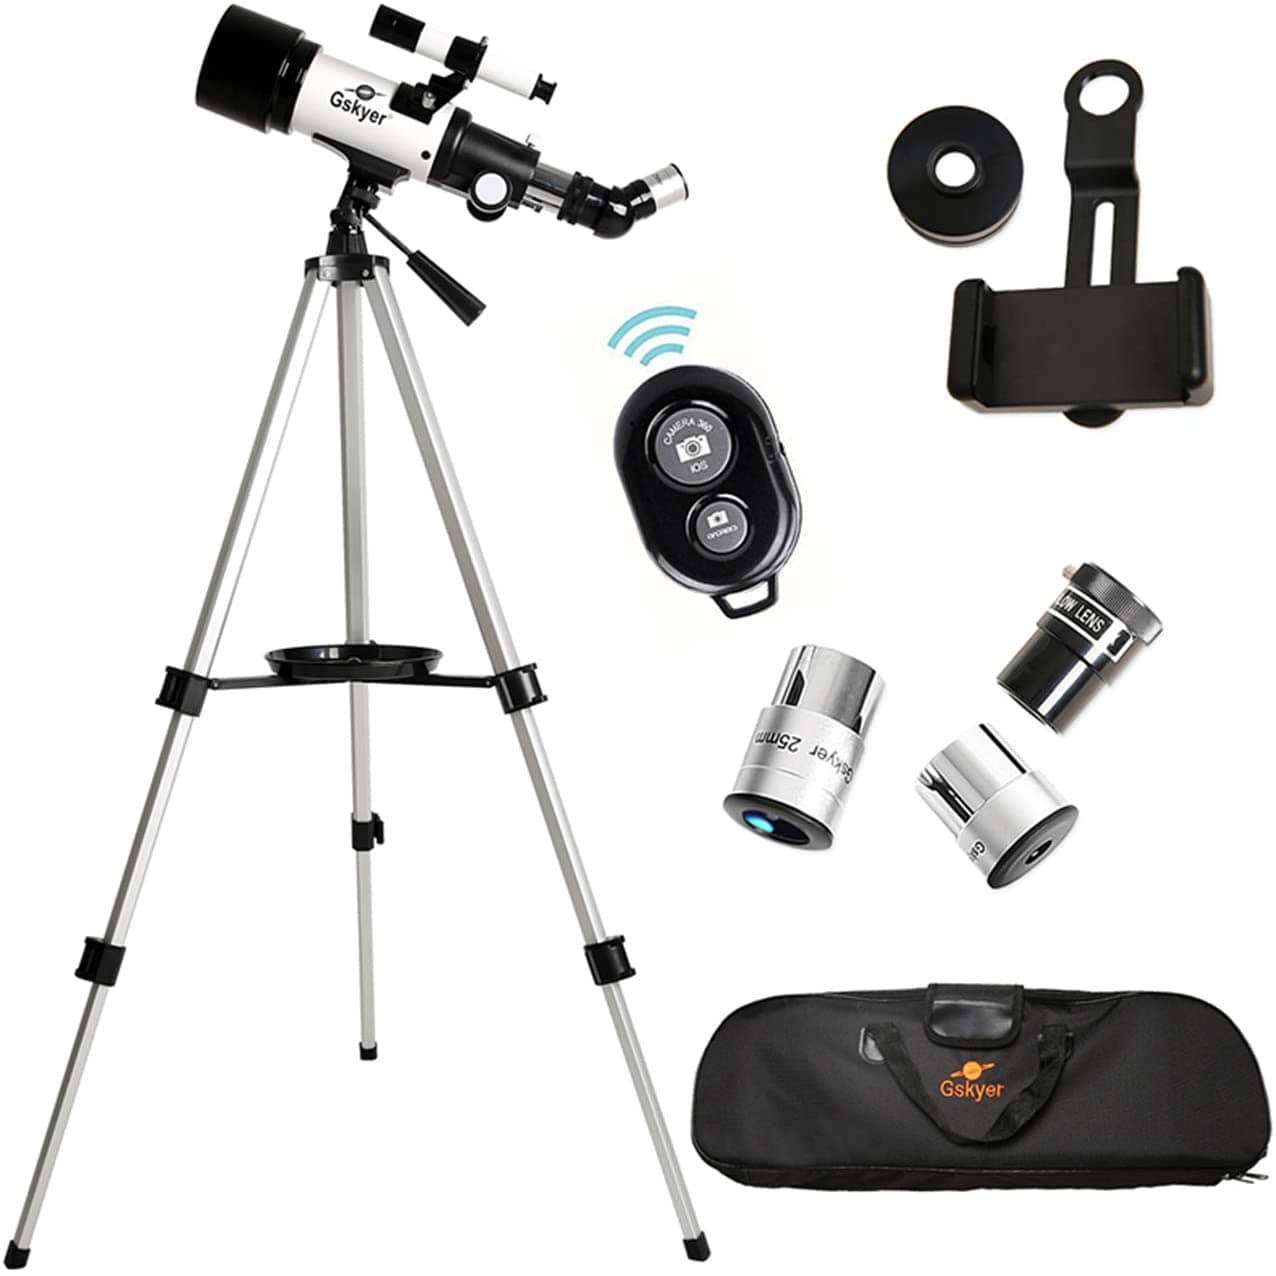 Gskyer Travel Telescope - Smart Tech Shopping